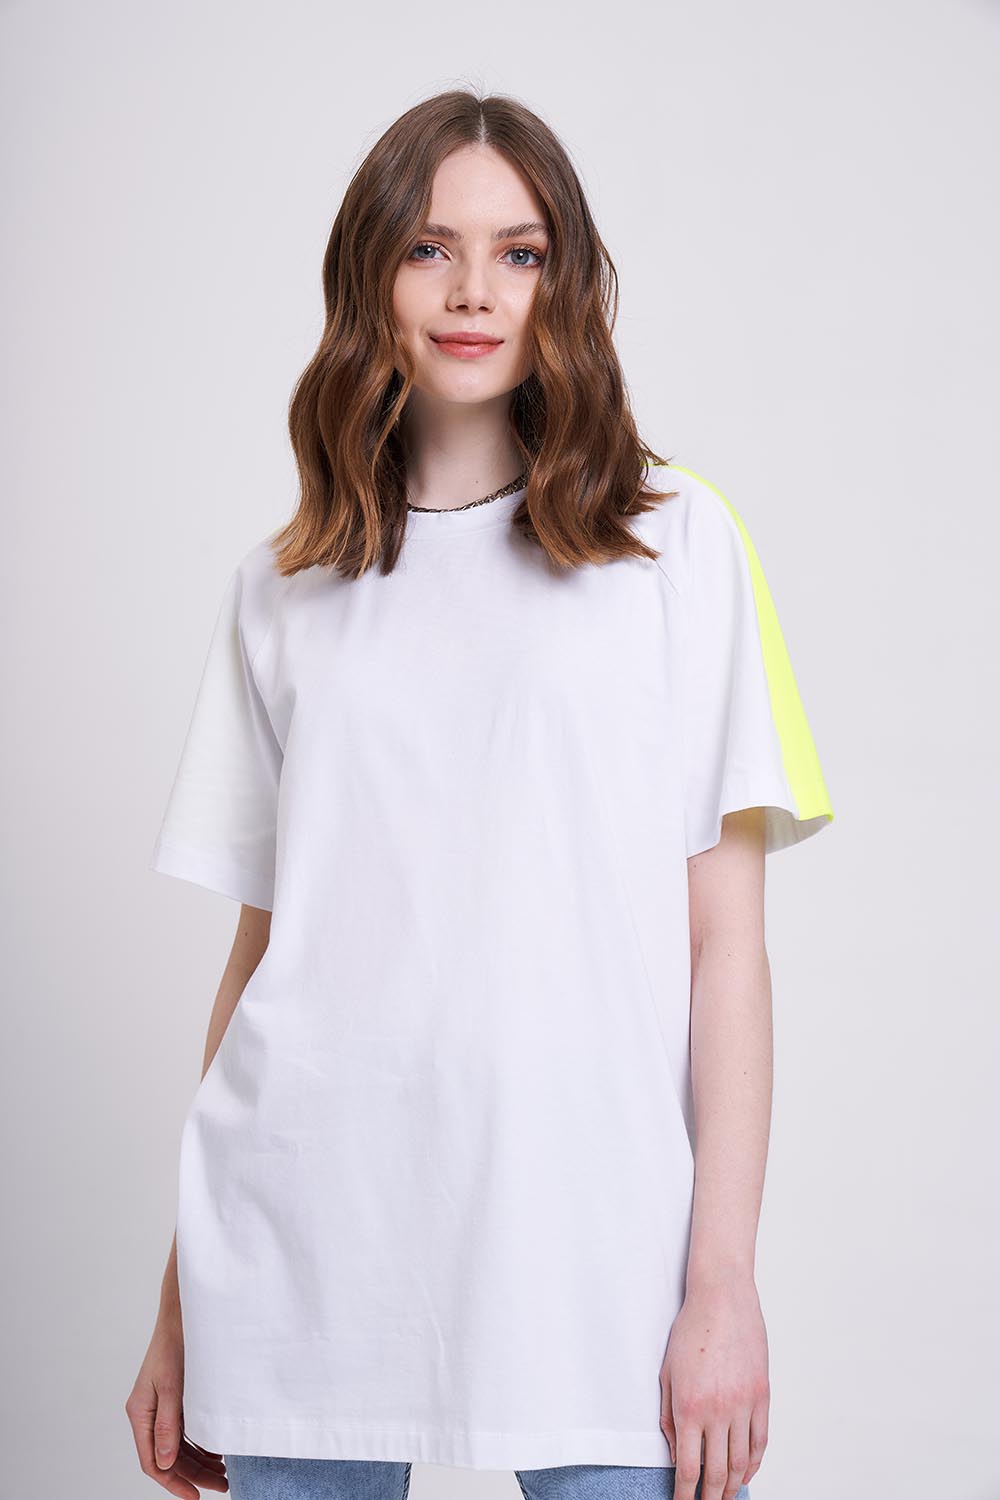 Neon Parçalı T-Shirt (Beyaz)